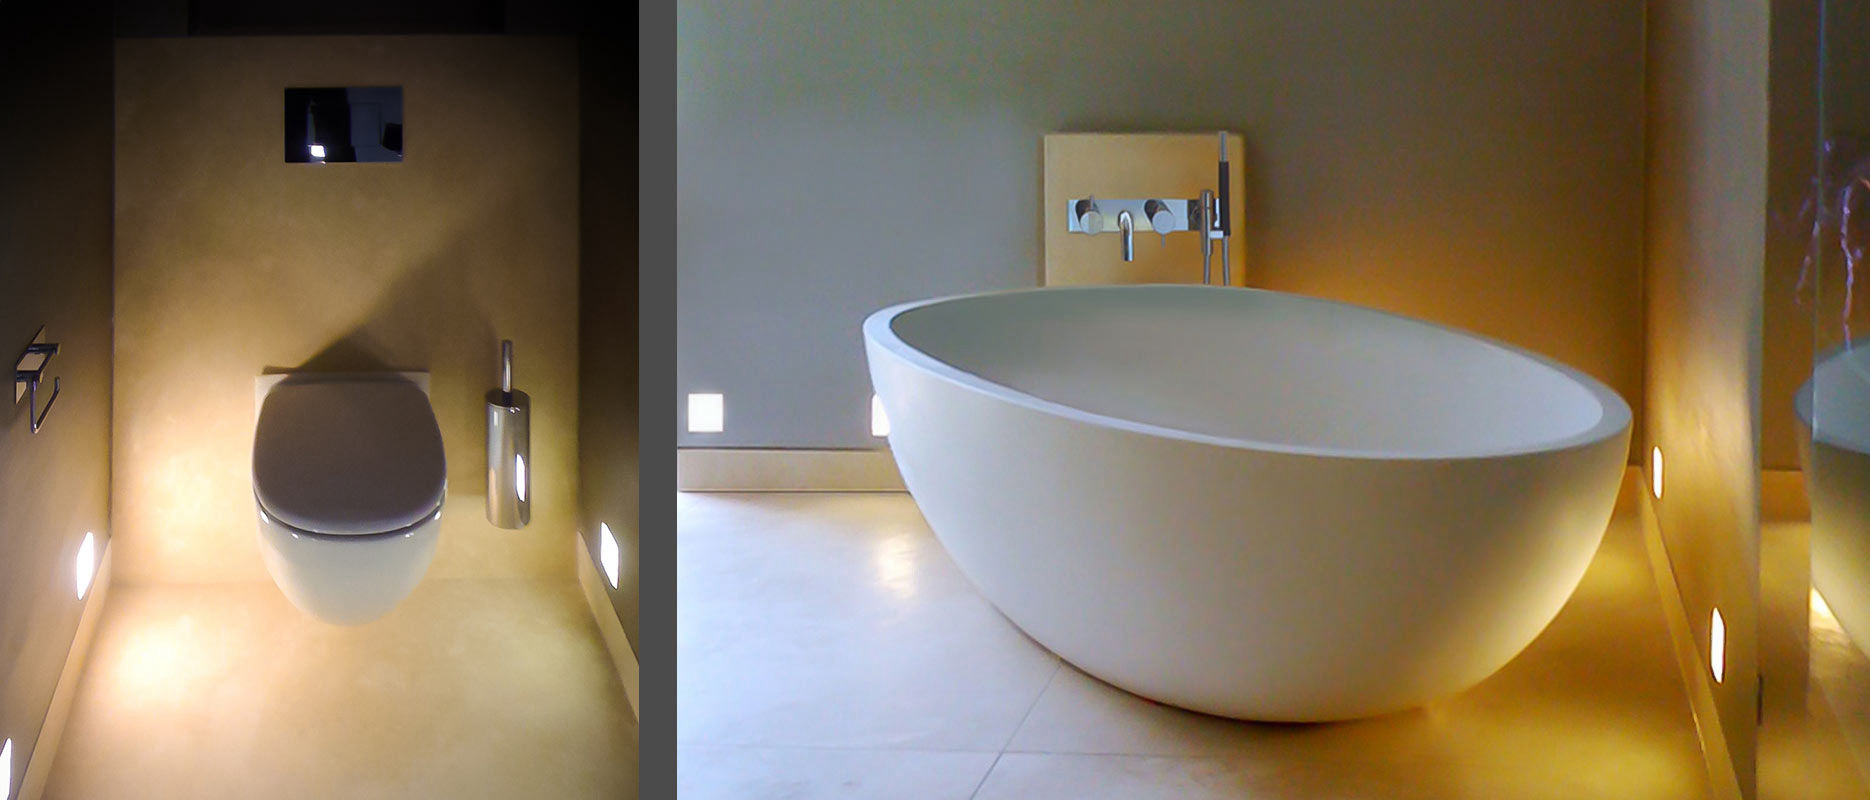 WC und freistehende Badewanne mit schönem Licht, Bad planen München